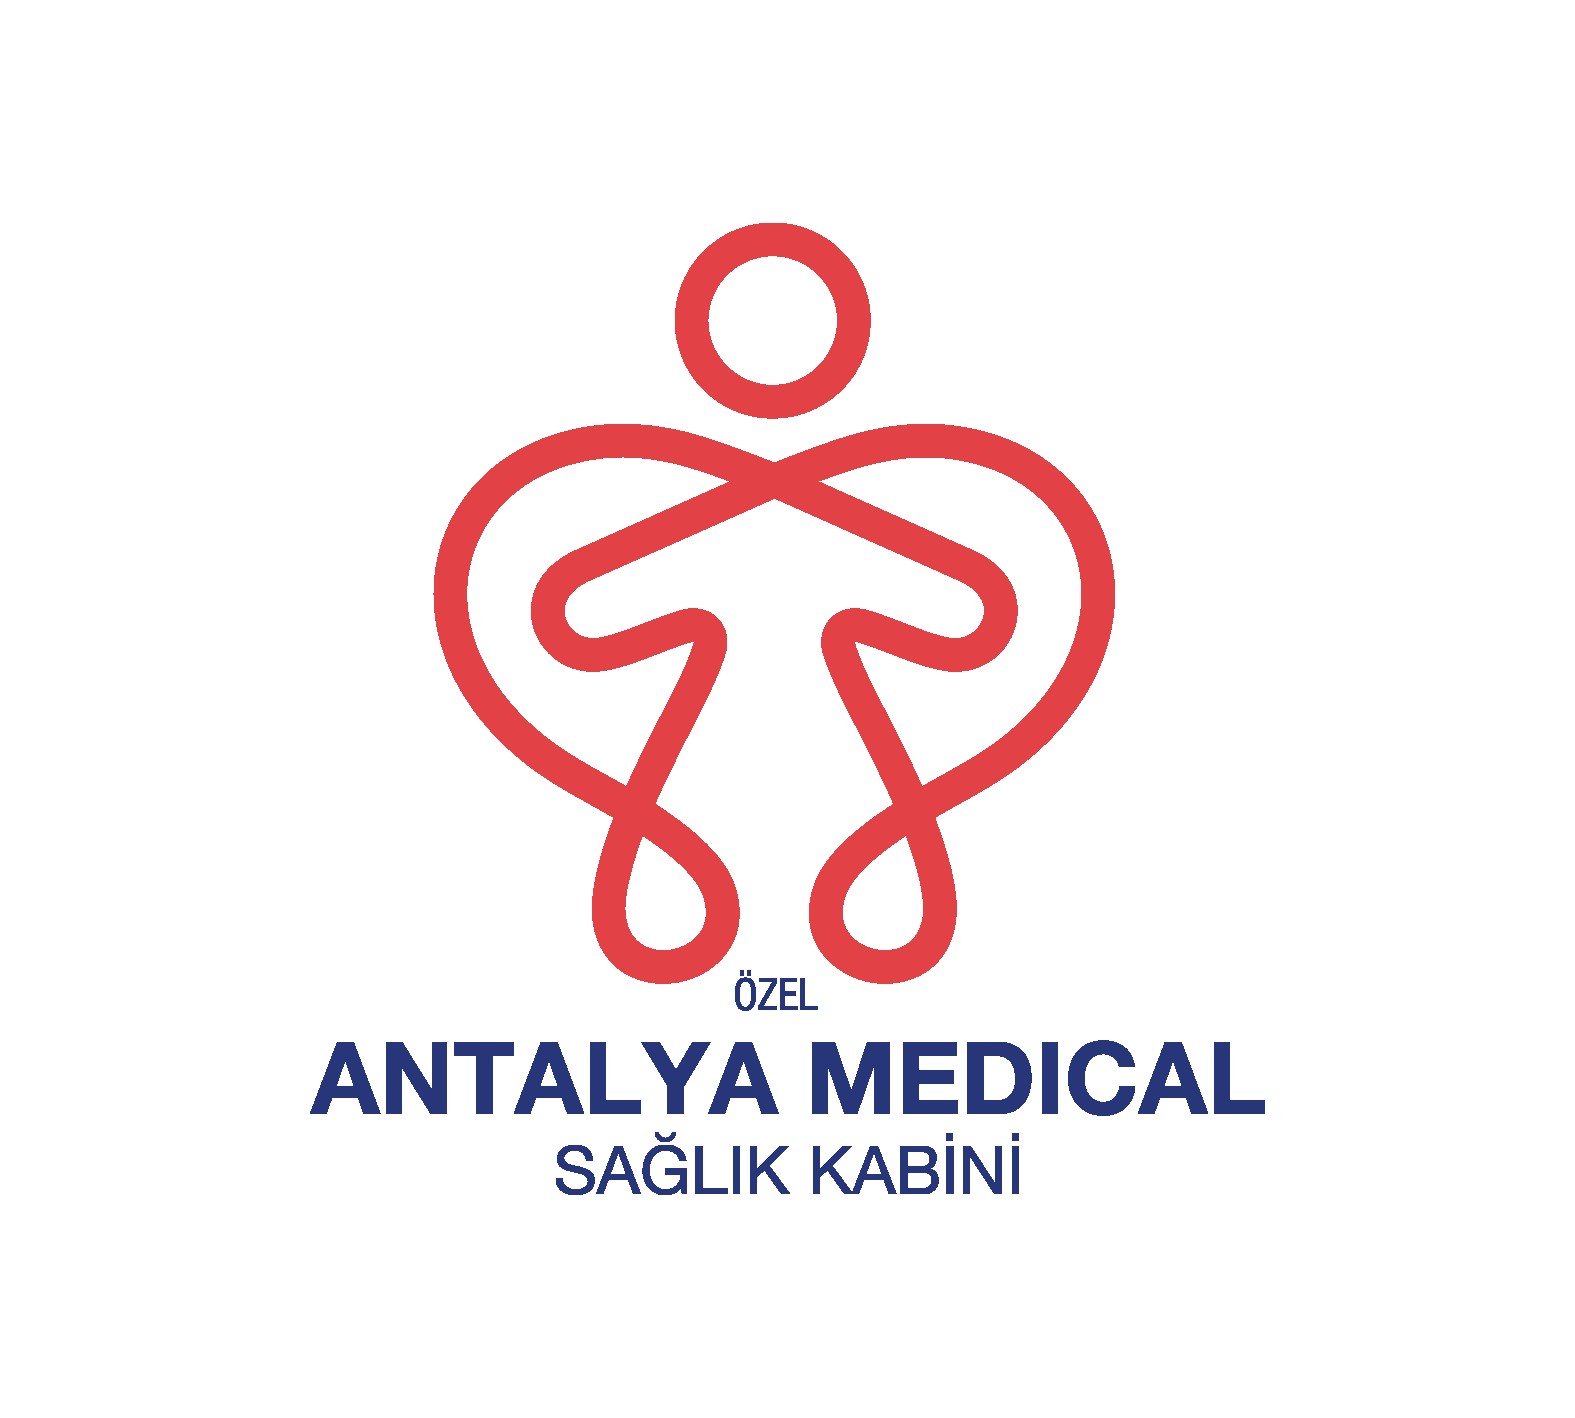 Antalya Medical Sağlık Kabini